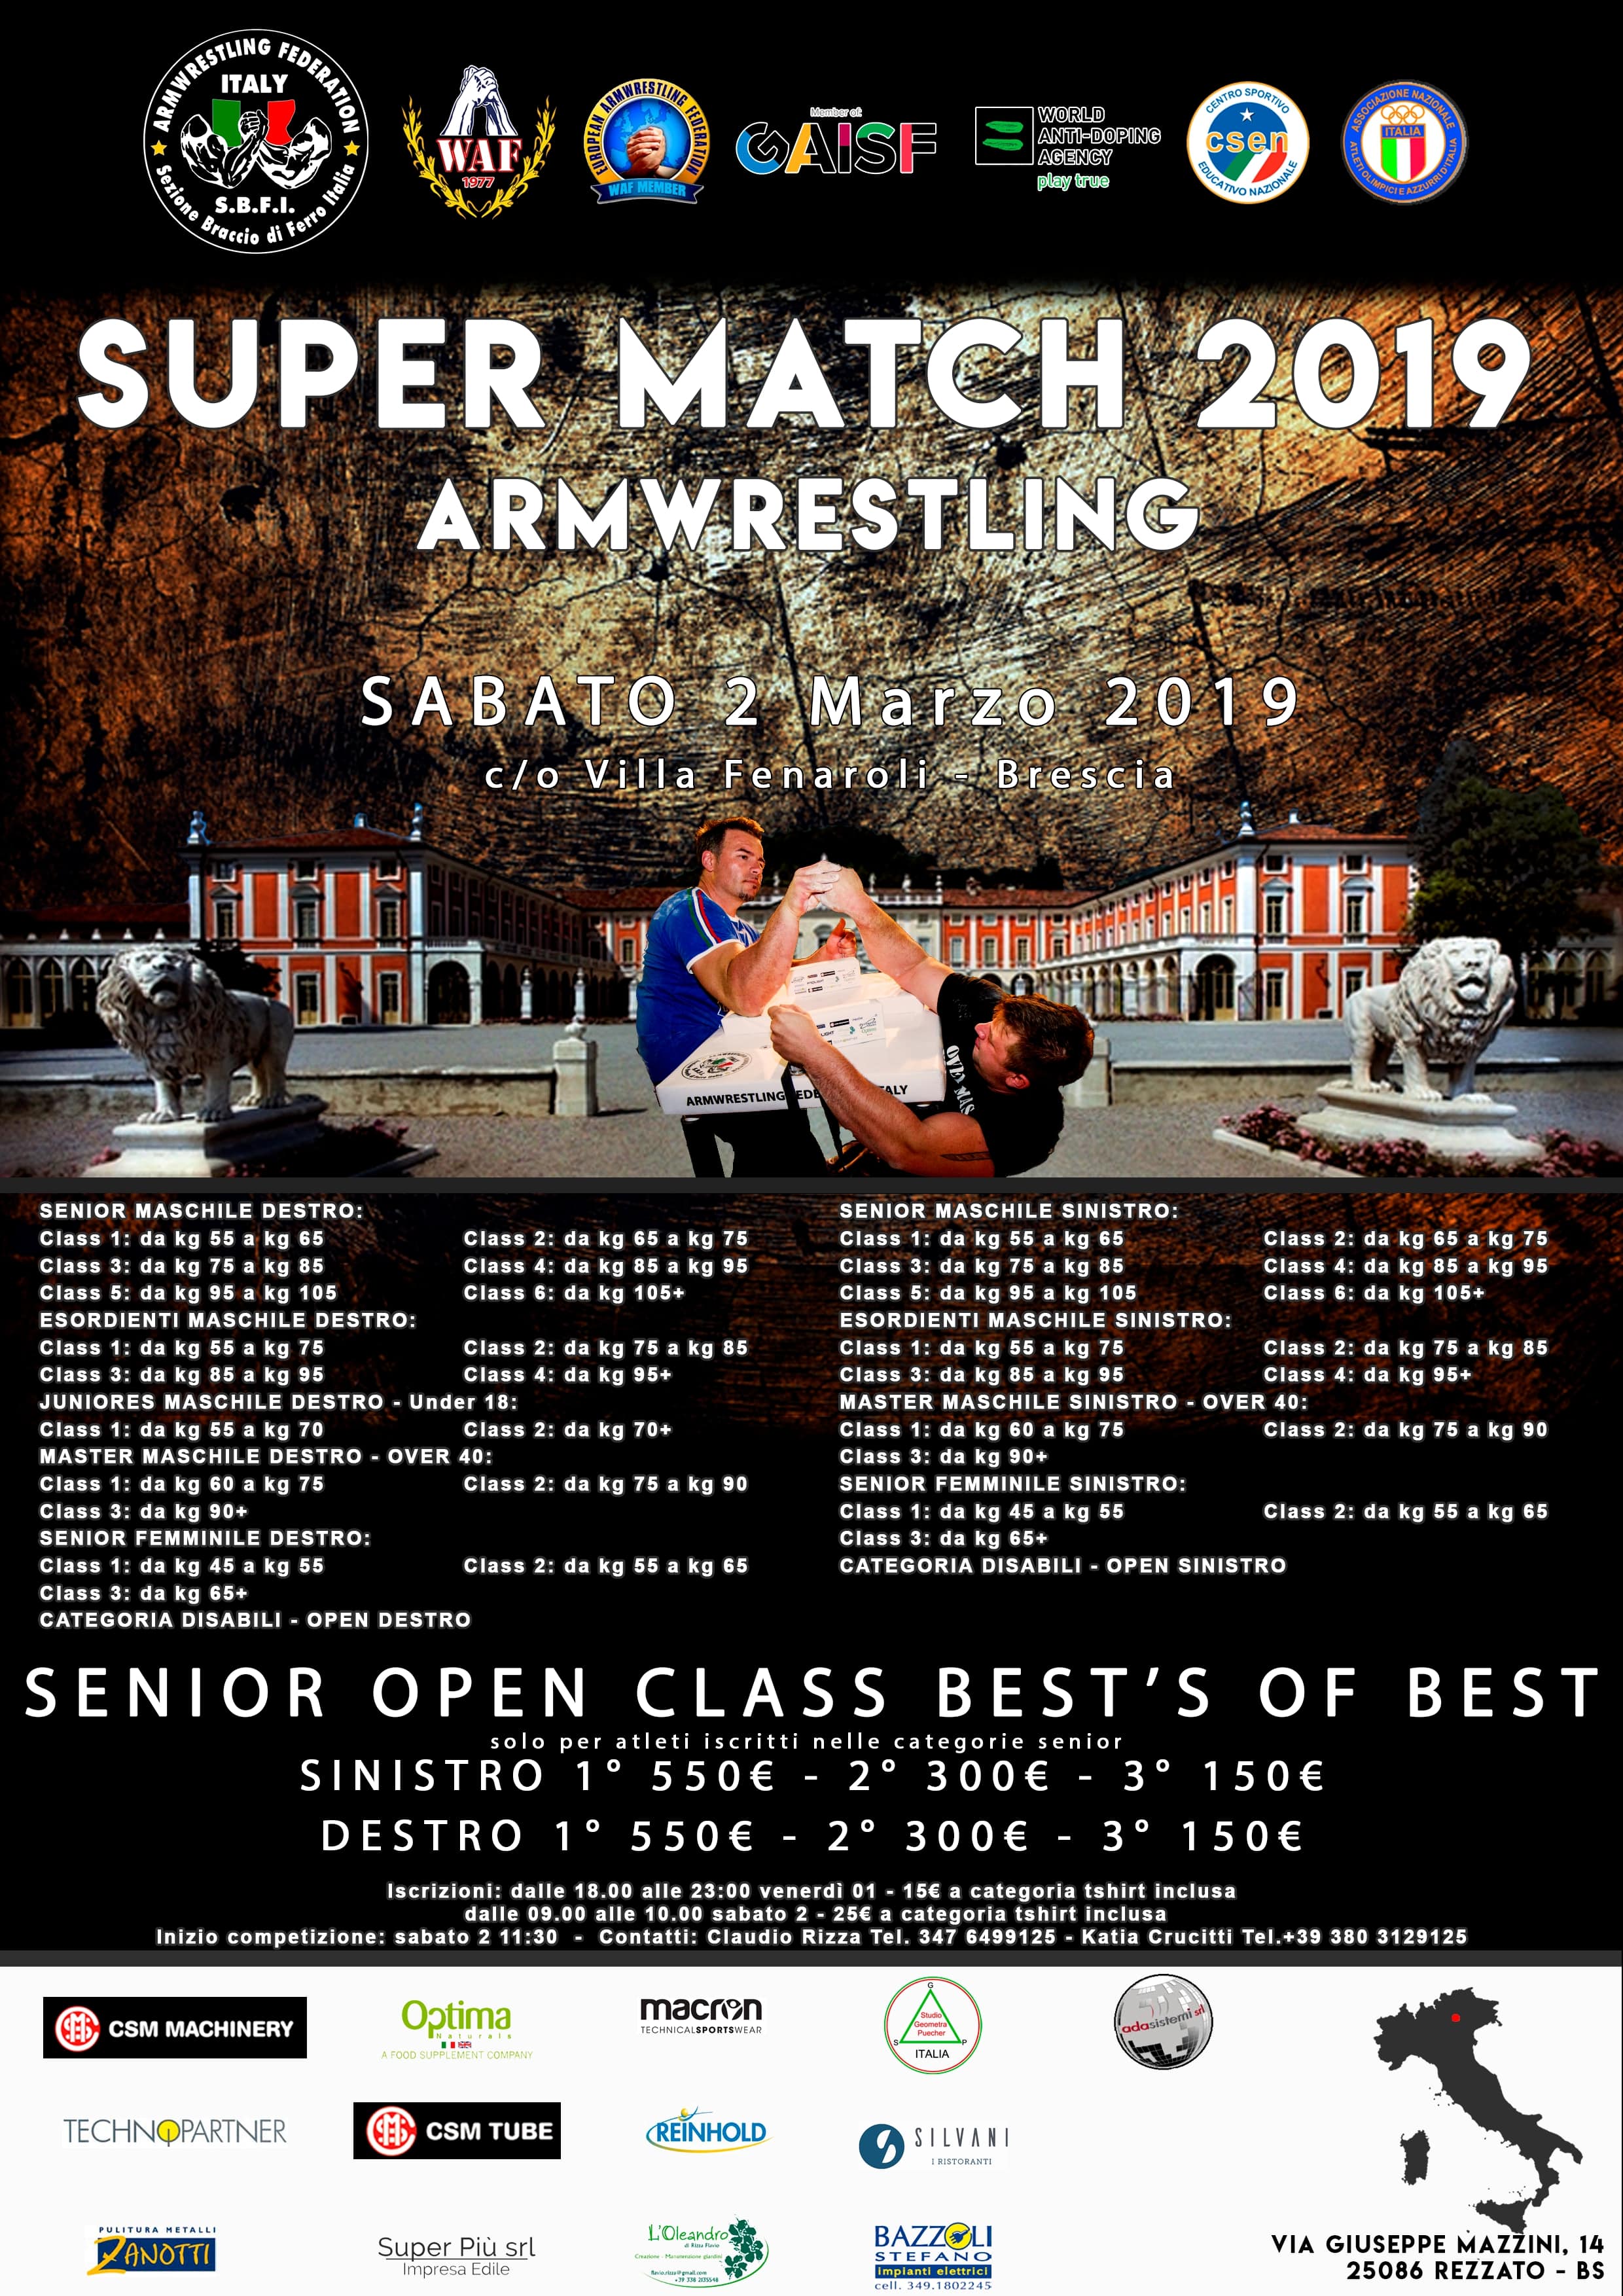 SBFI - Super Match 2019